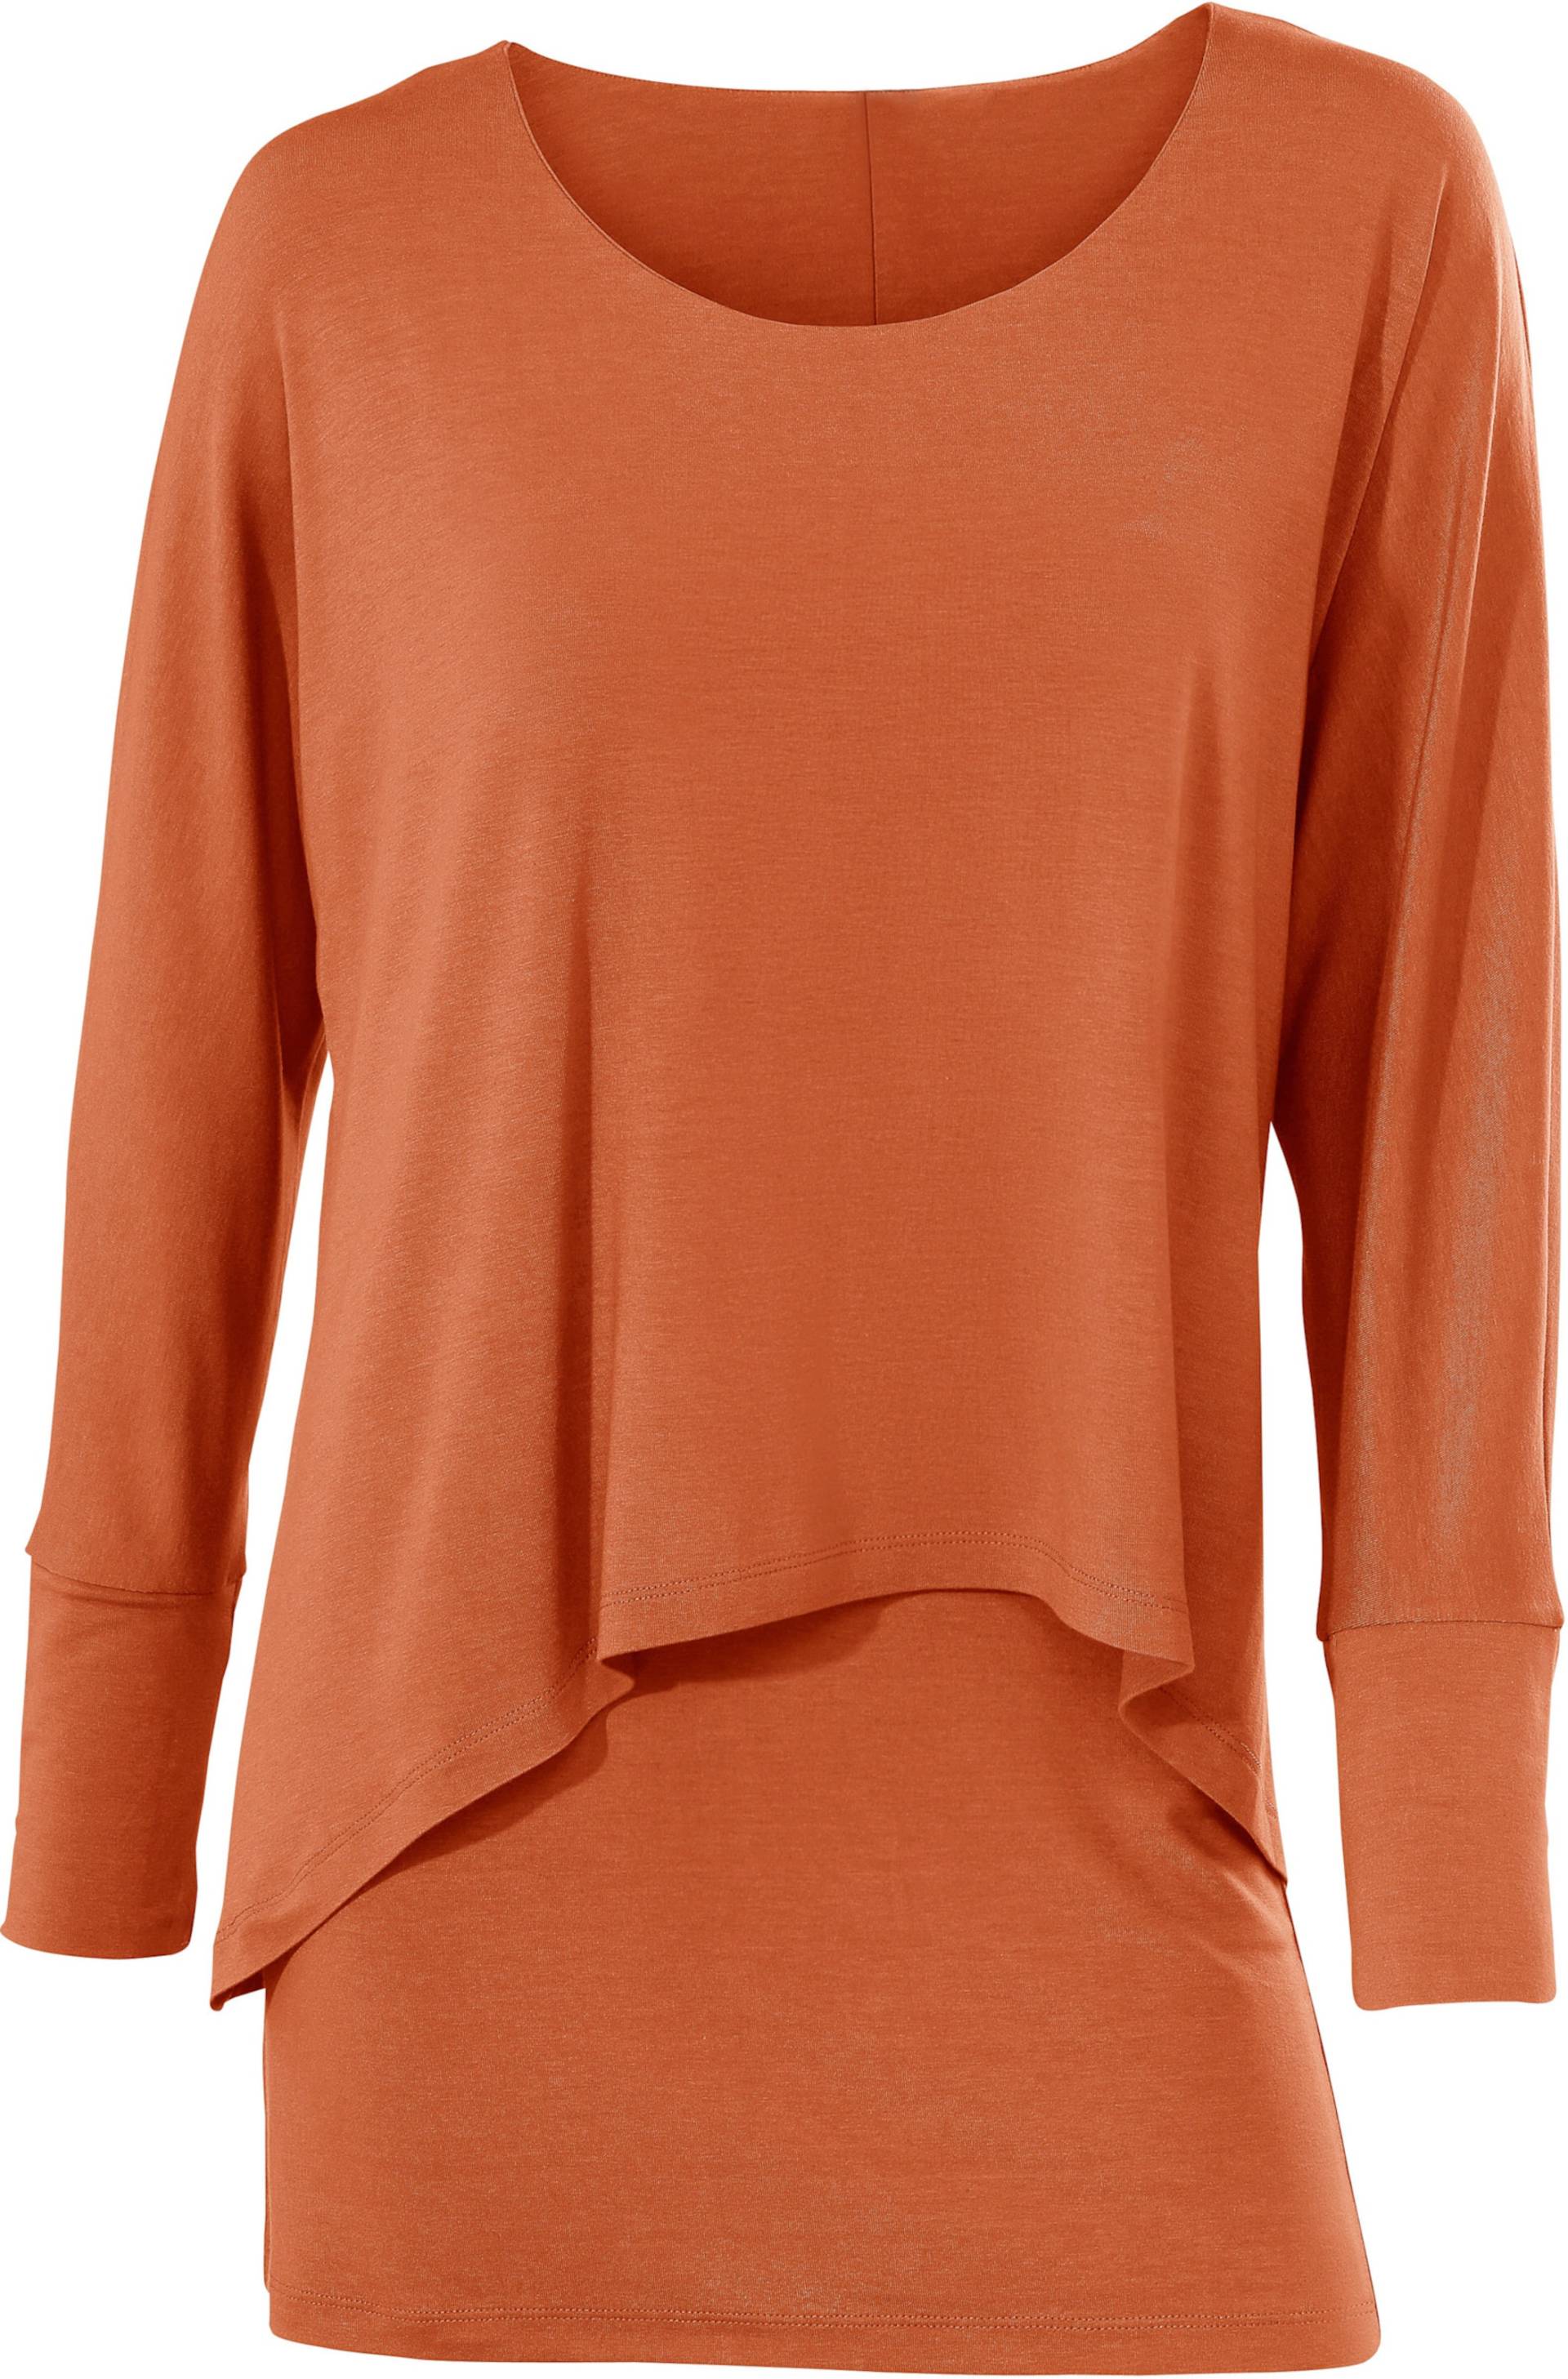 Rundhals-Shirt in orange von heine